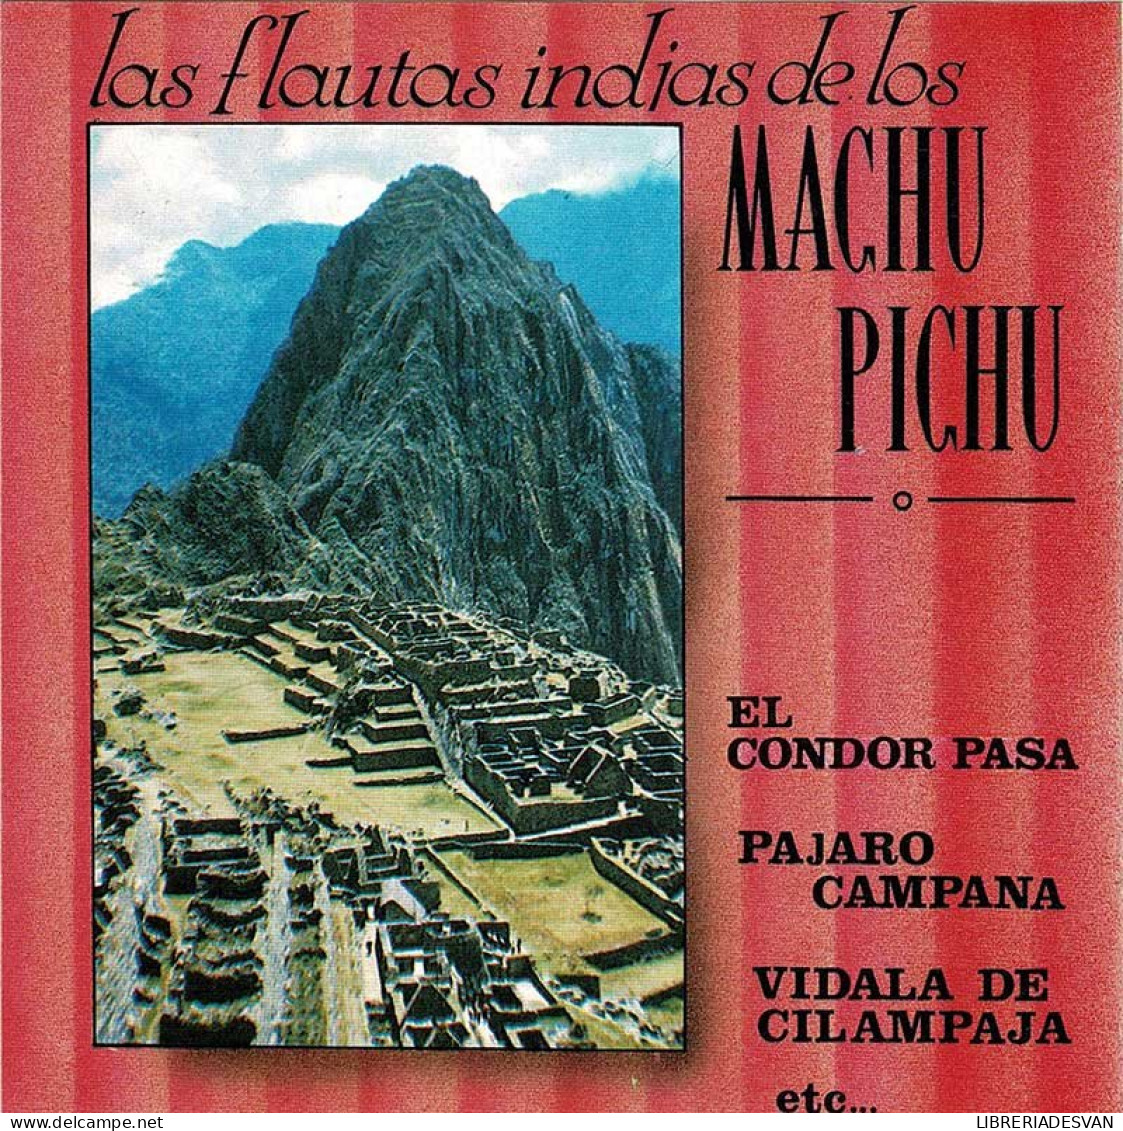 Las Flautas Indias De Los Machu Pichu. CD - Country & Folk